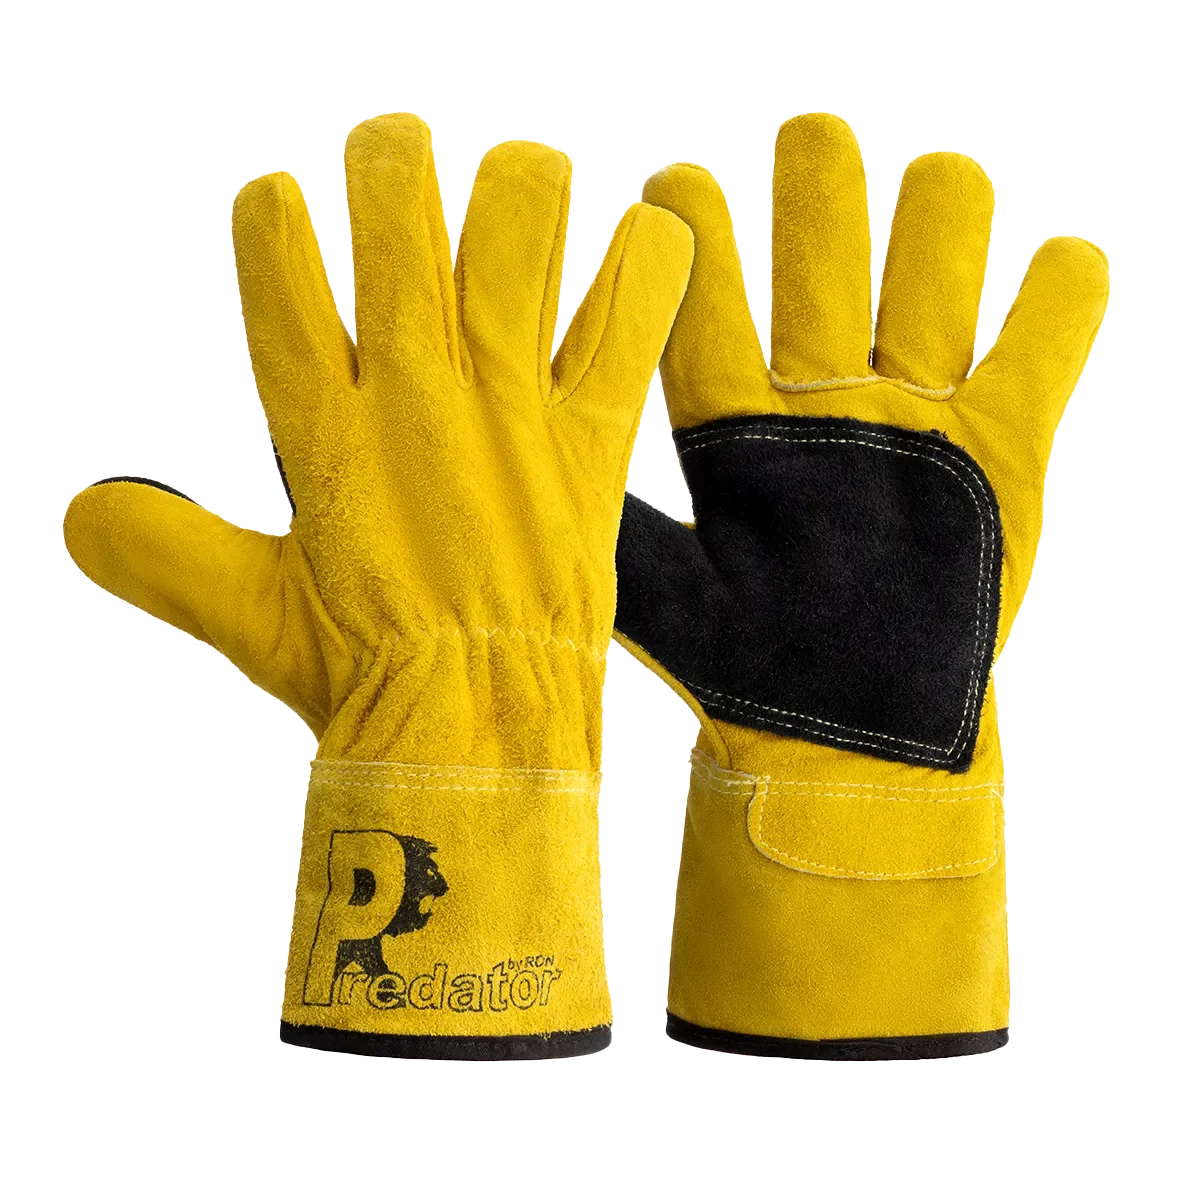 PRED4-GLOVE Pair Safety Gloves